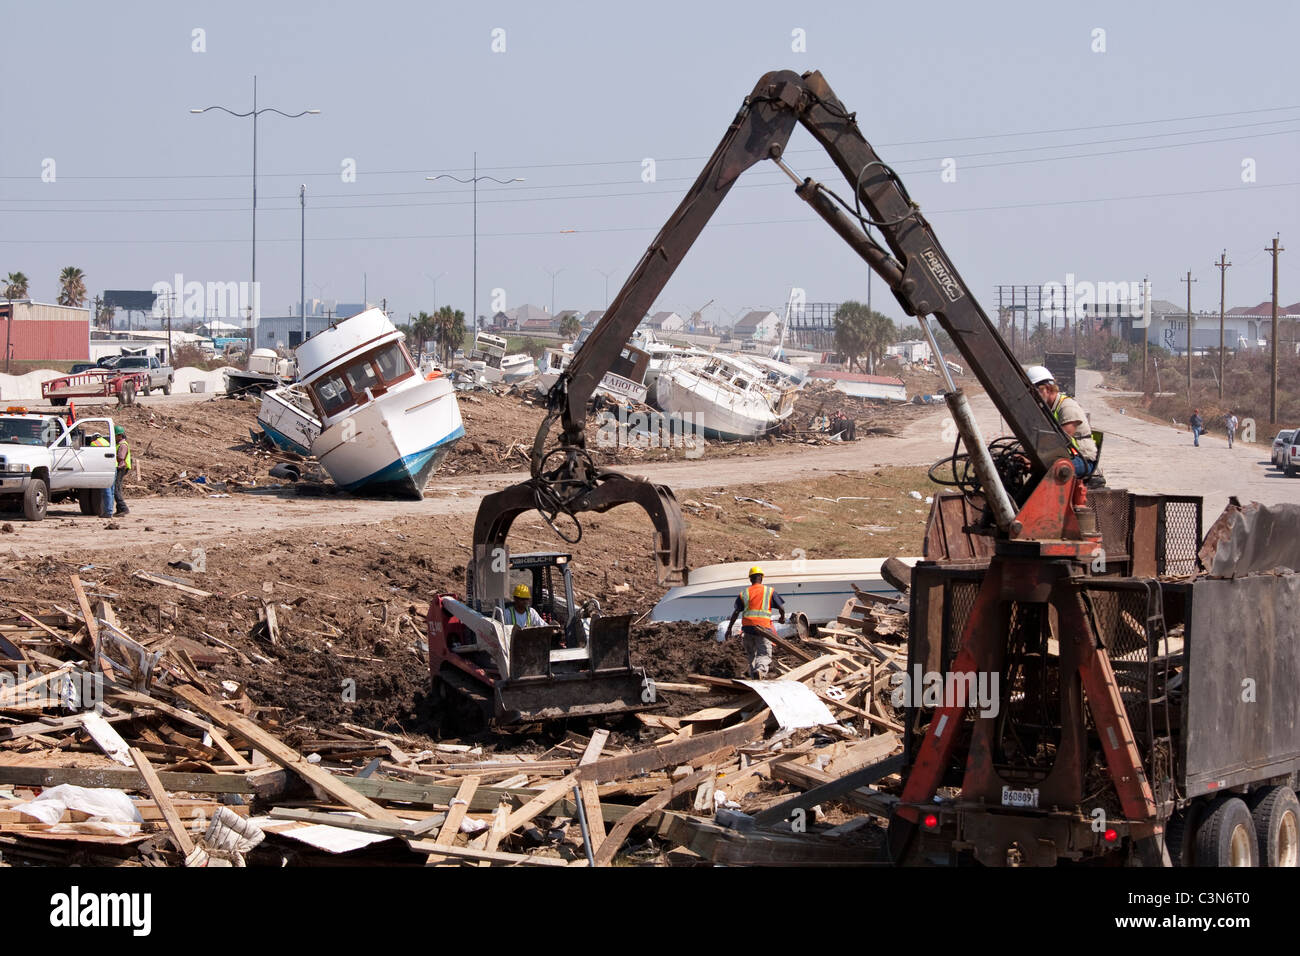 Grúa de elevación restos del montón de destrucción dejada por el huracán categoría 4 Ike en Galveston, Texas, en septiembre de 2008 Foto de stock